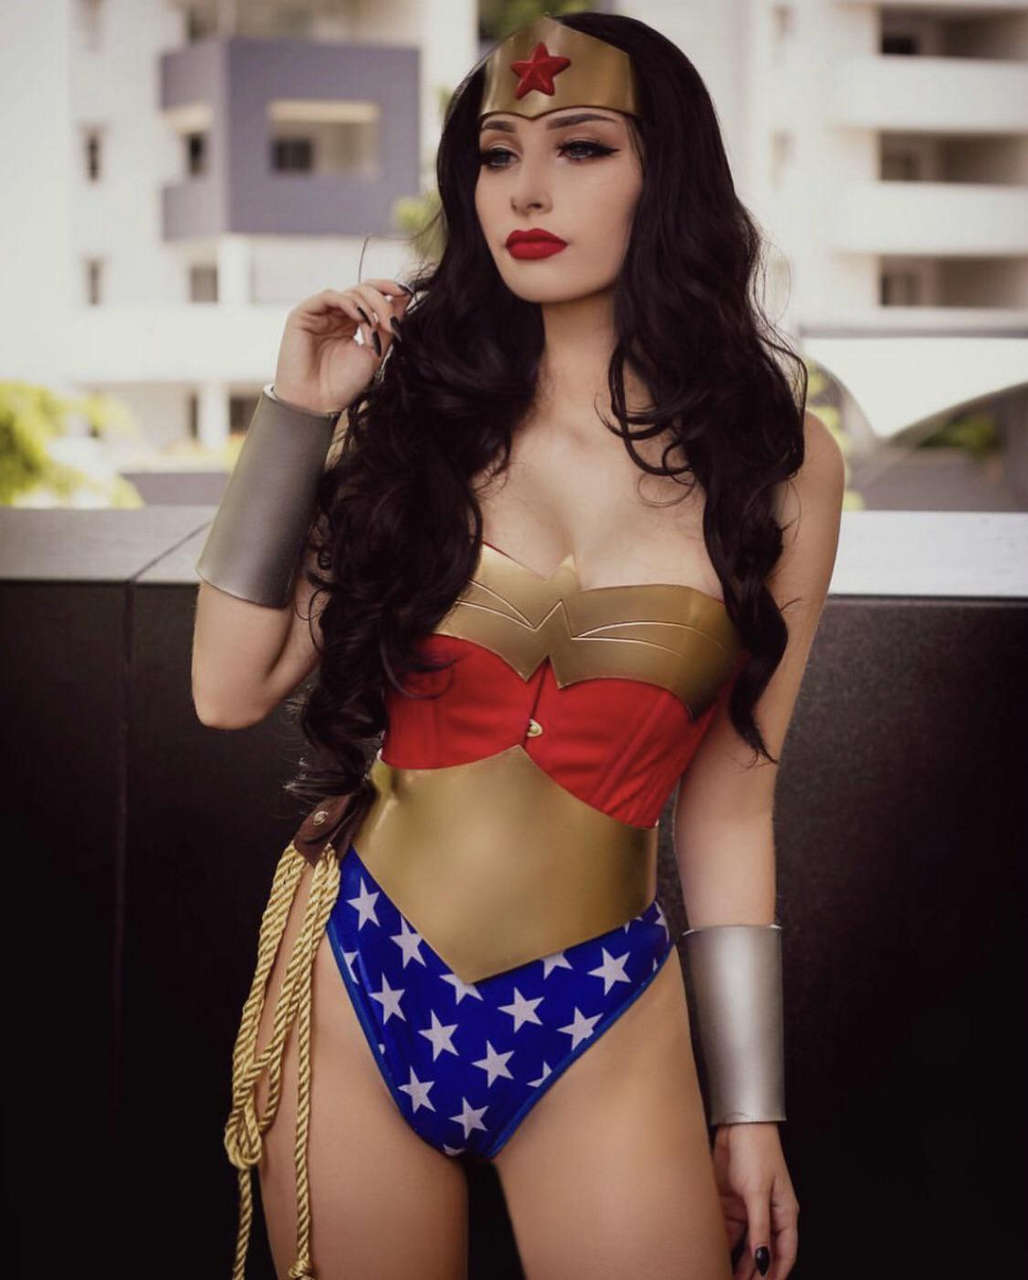 Wonder Woman By Beke Jacob